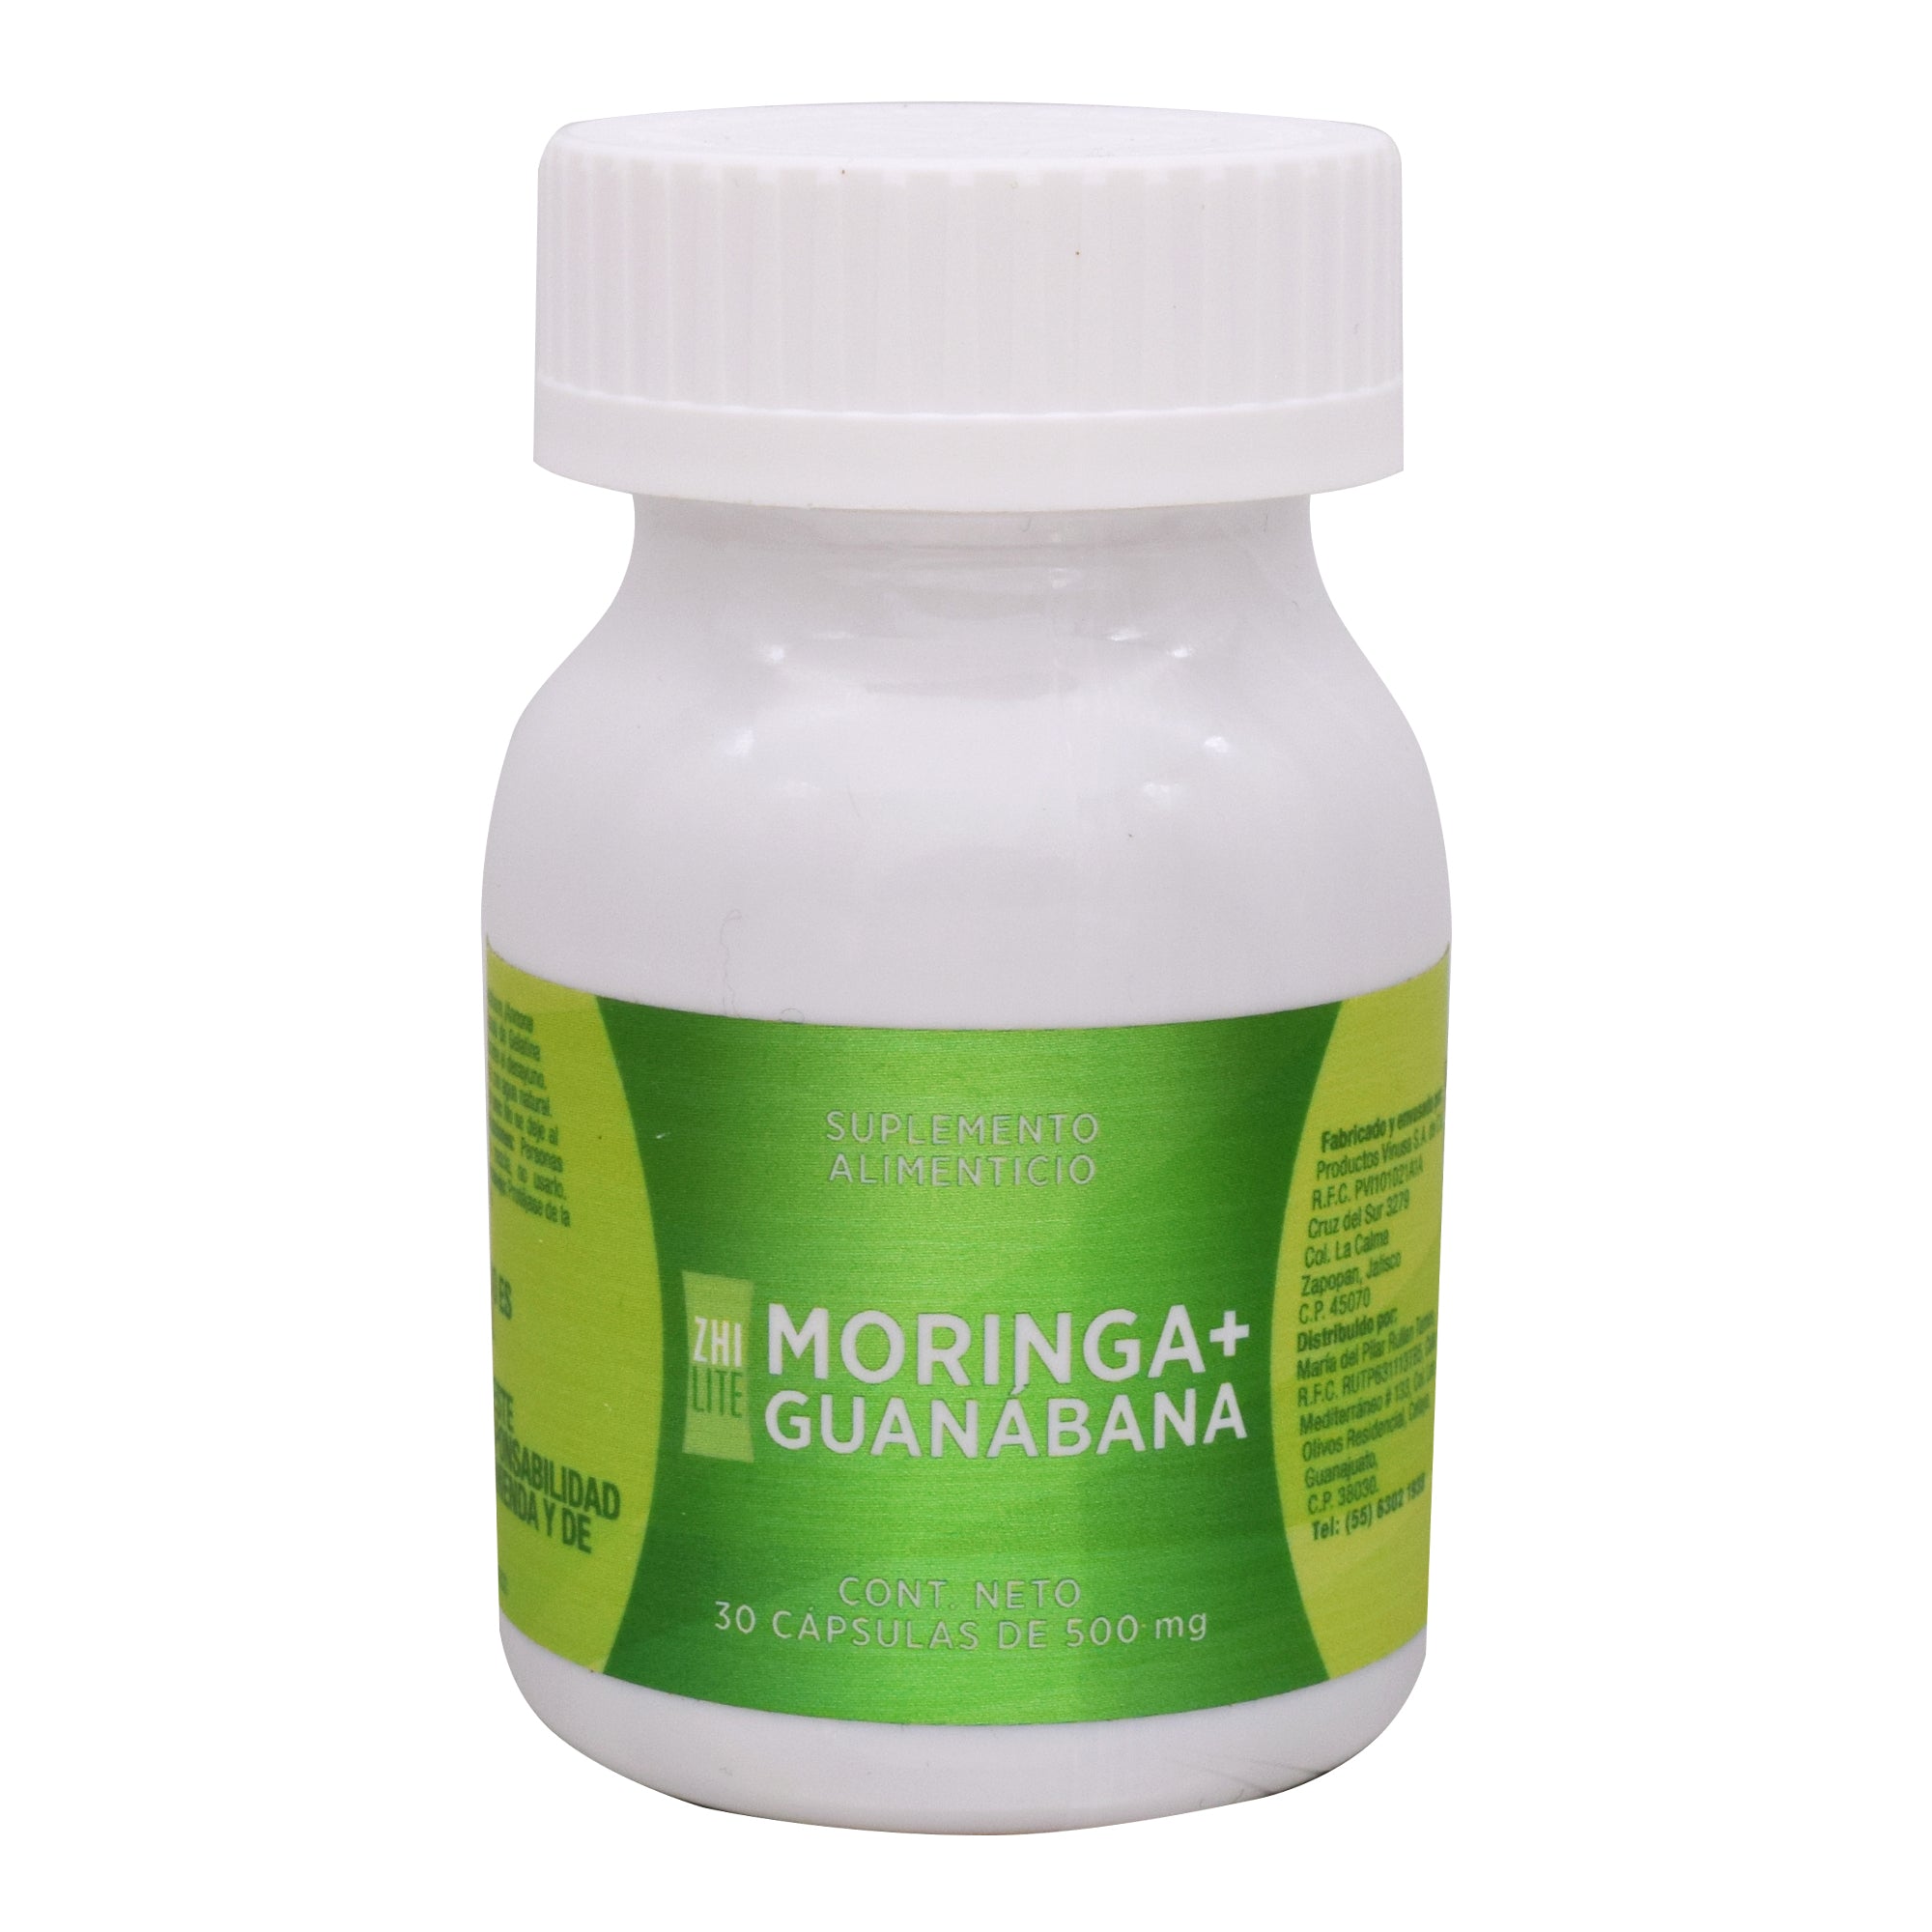 Moringa guanabana 30 cap